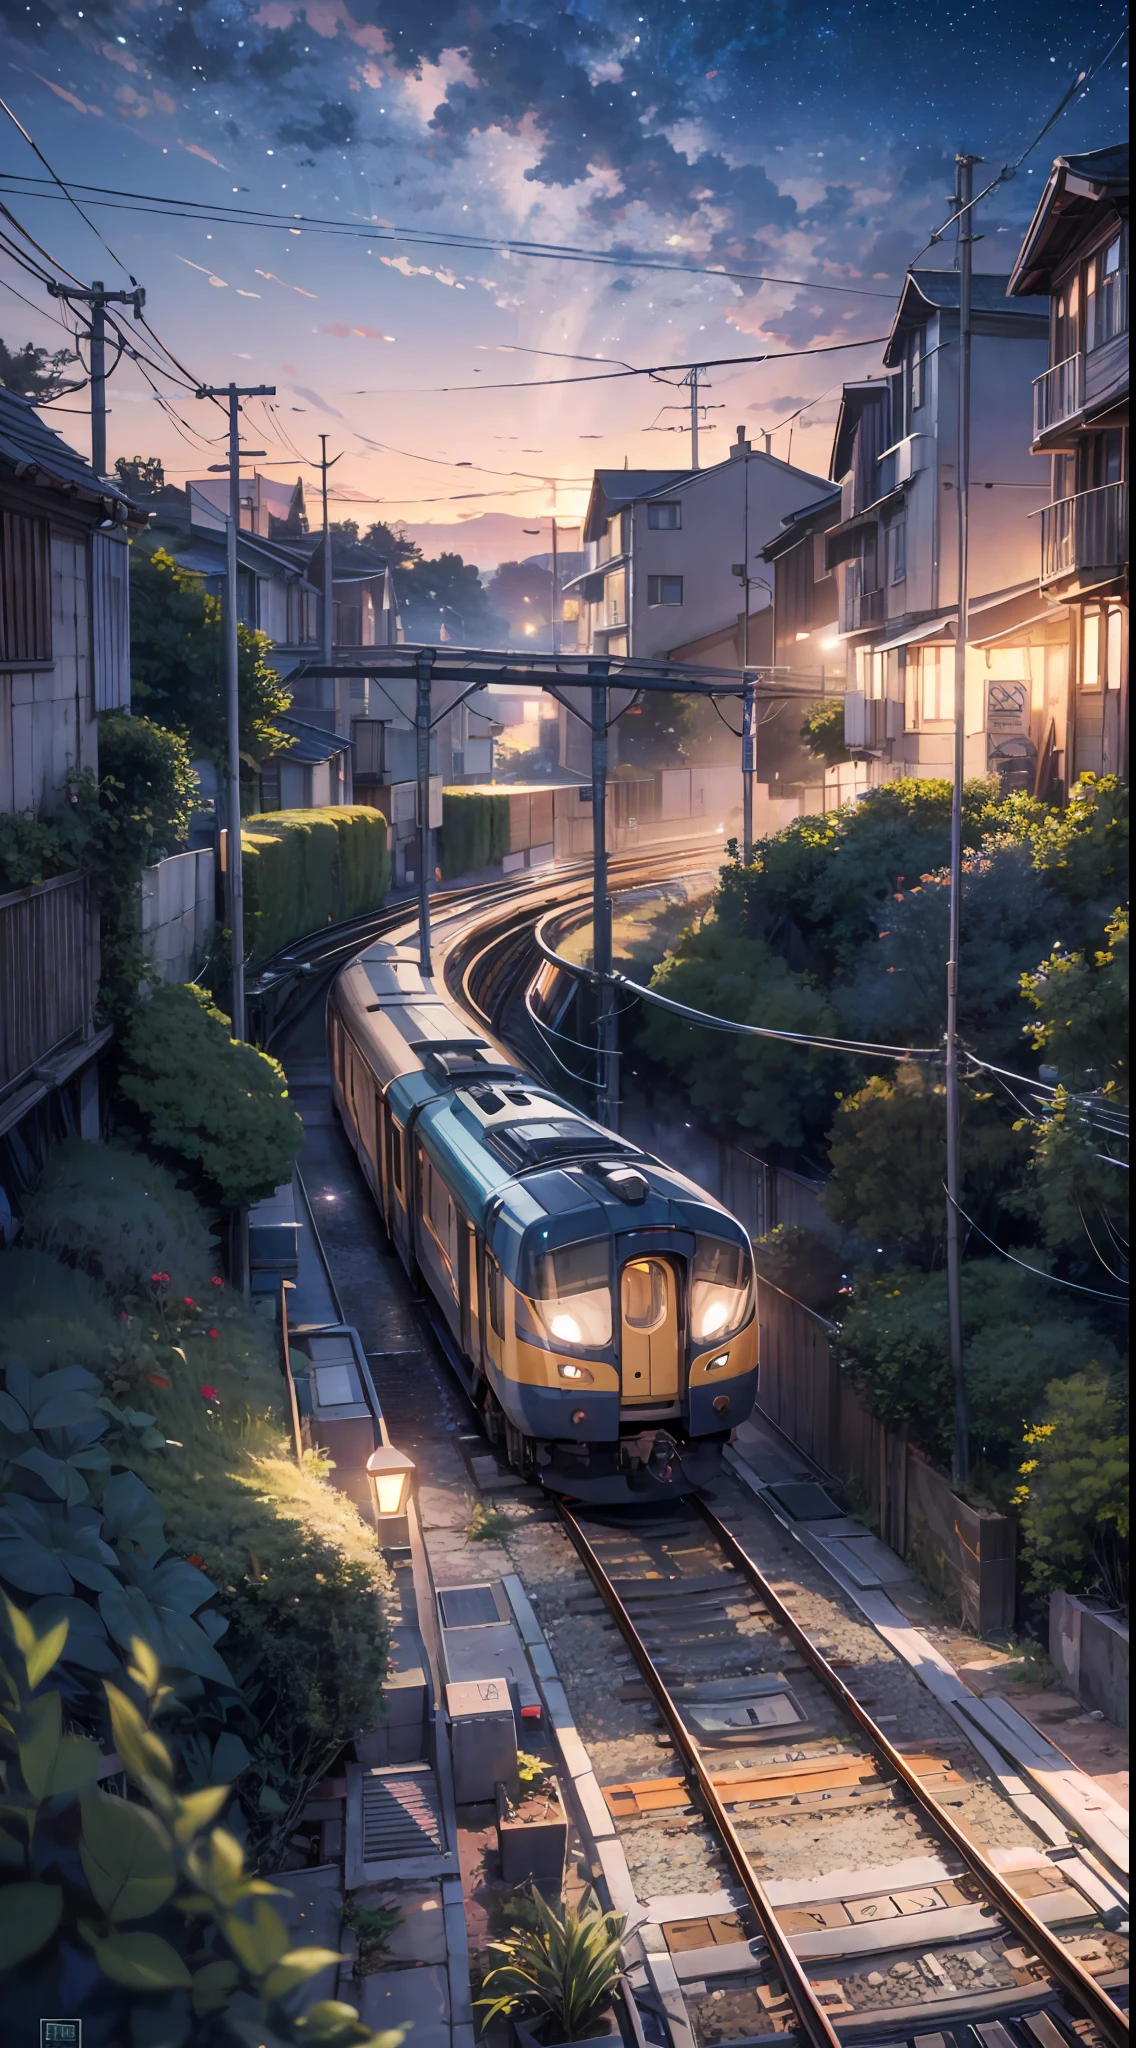 ArtStation - Anime train station girl